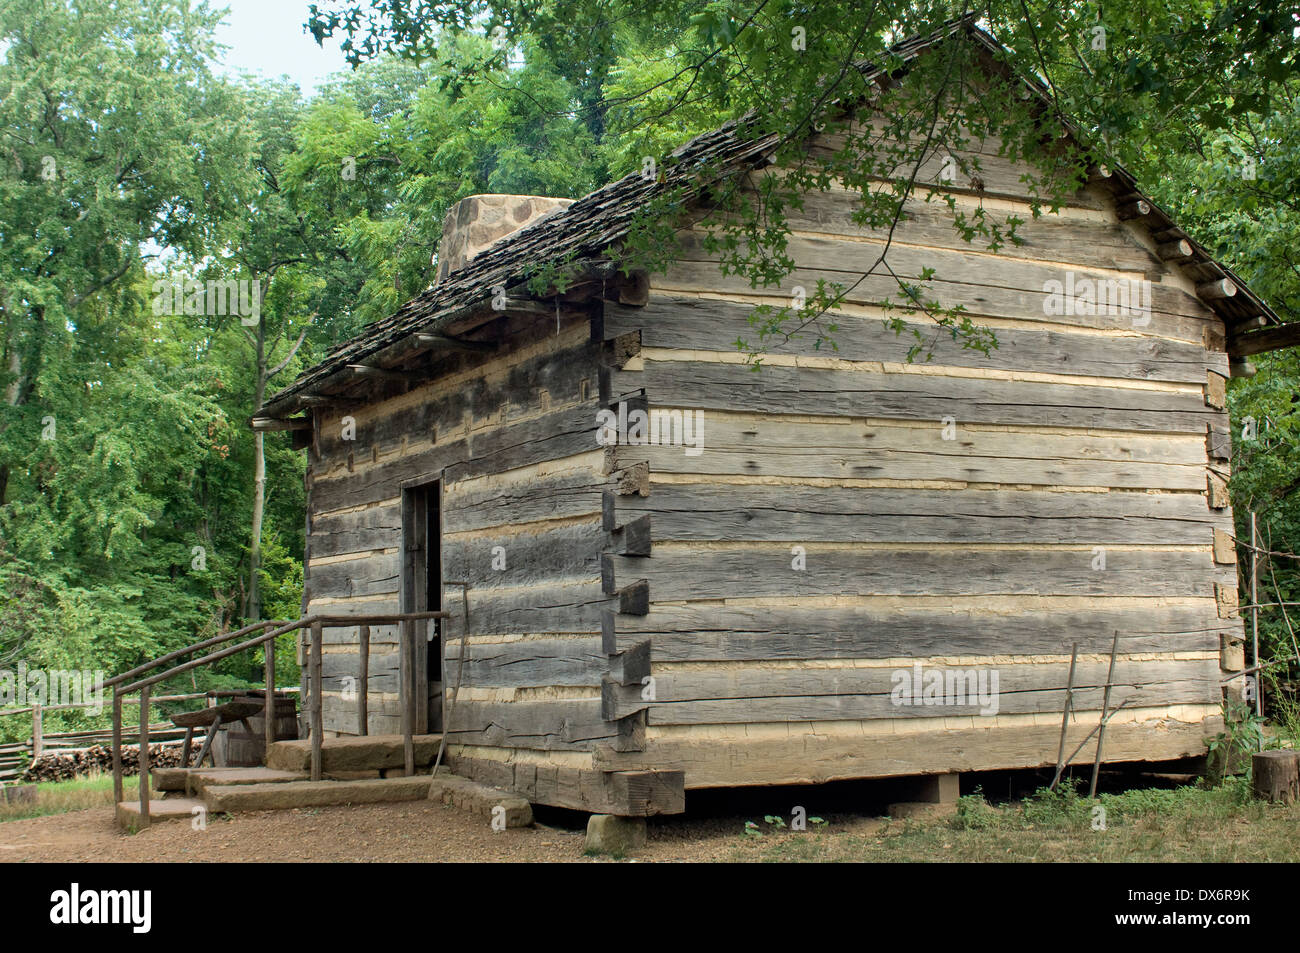 La famille Lincoln log cabin (réplique), Lincoln Boyhood National Memorial, dans l'Indiana. Photographie numérique Banque D'Images